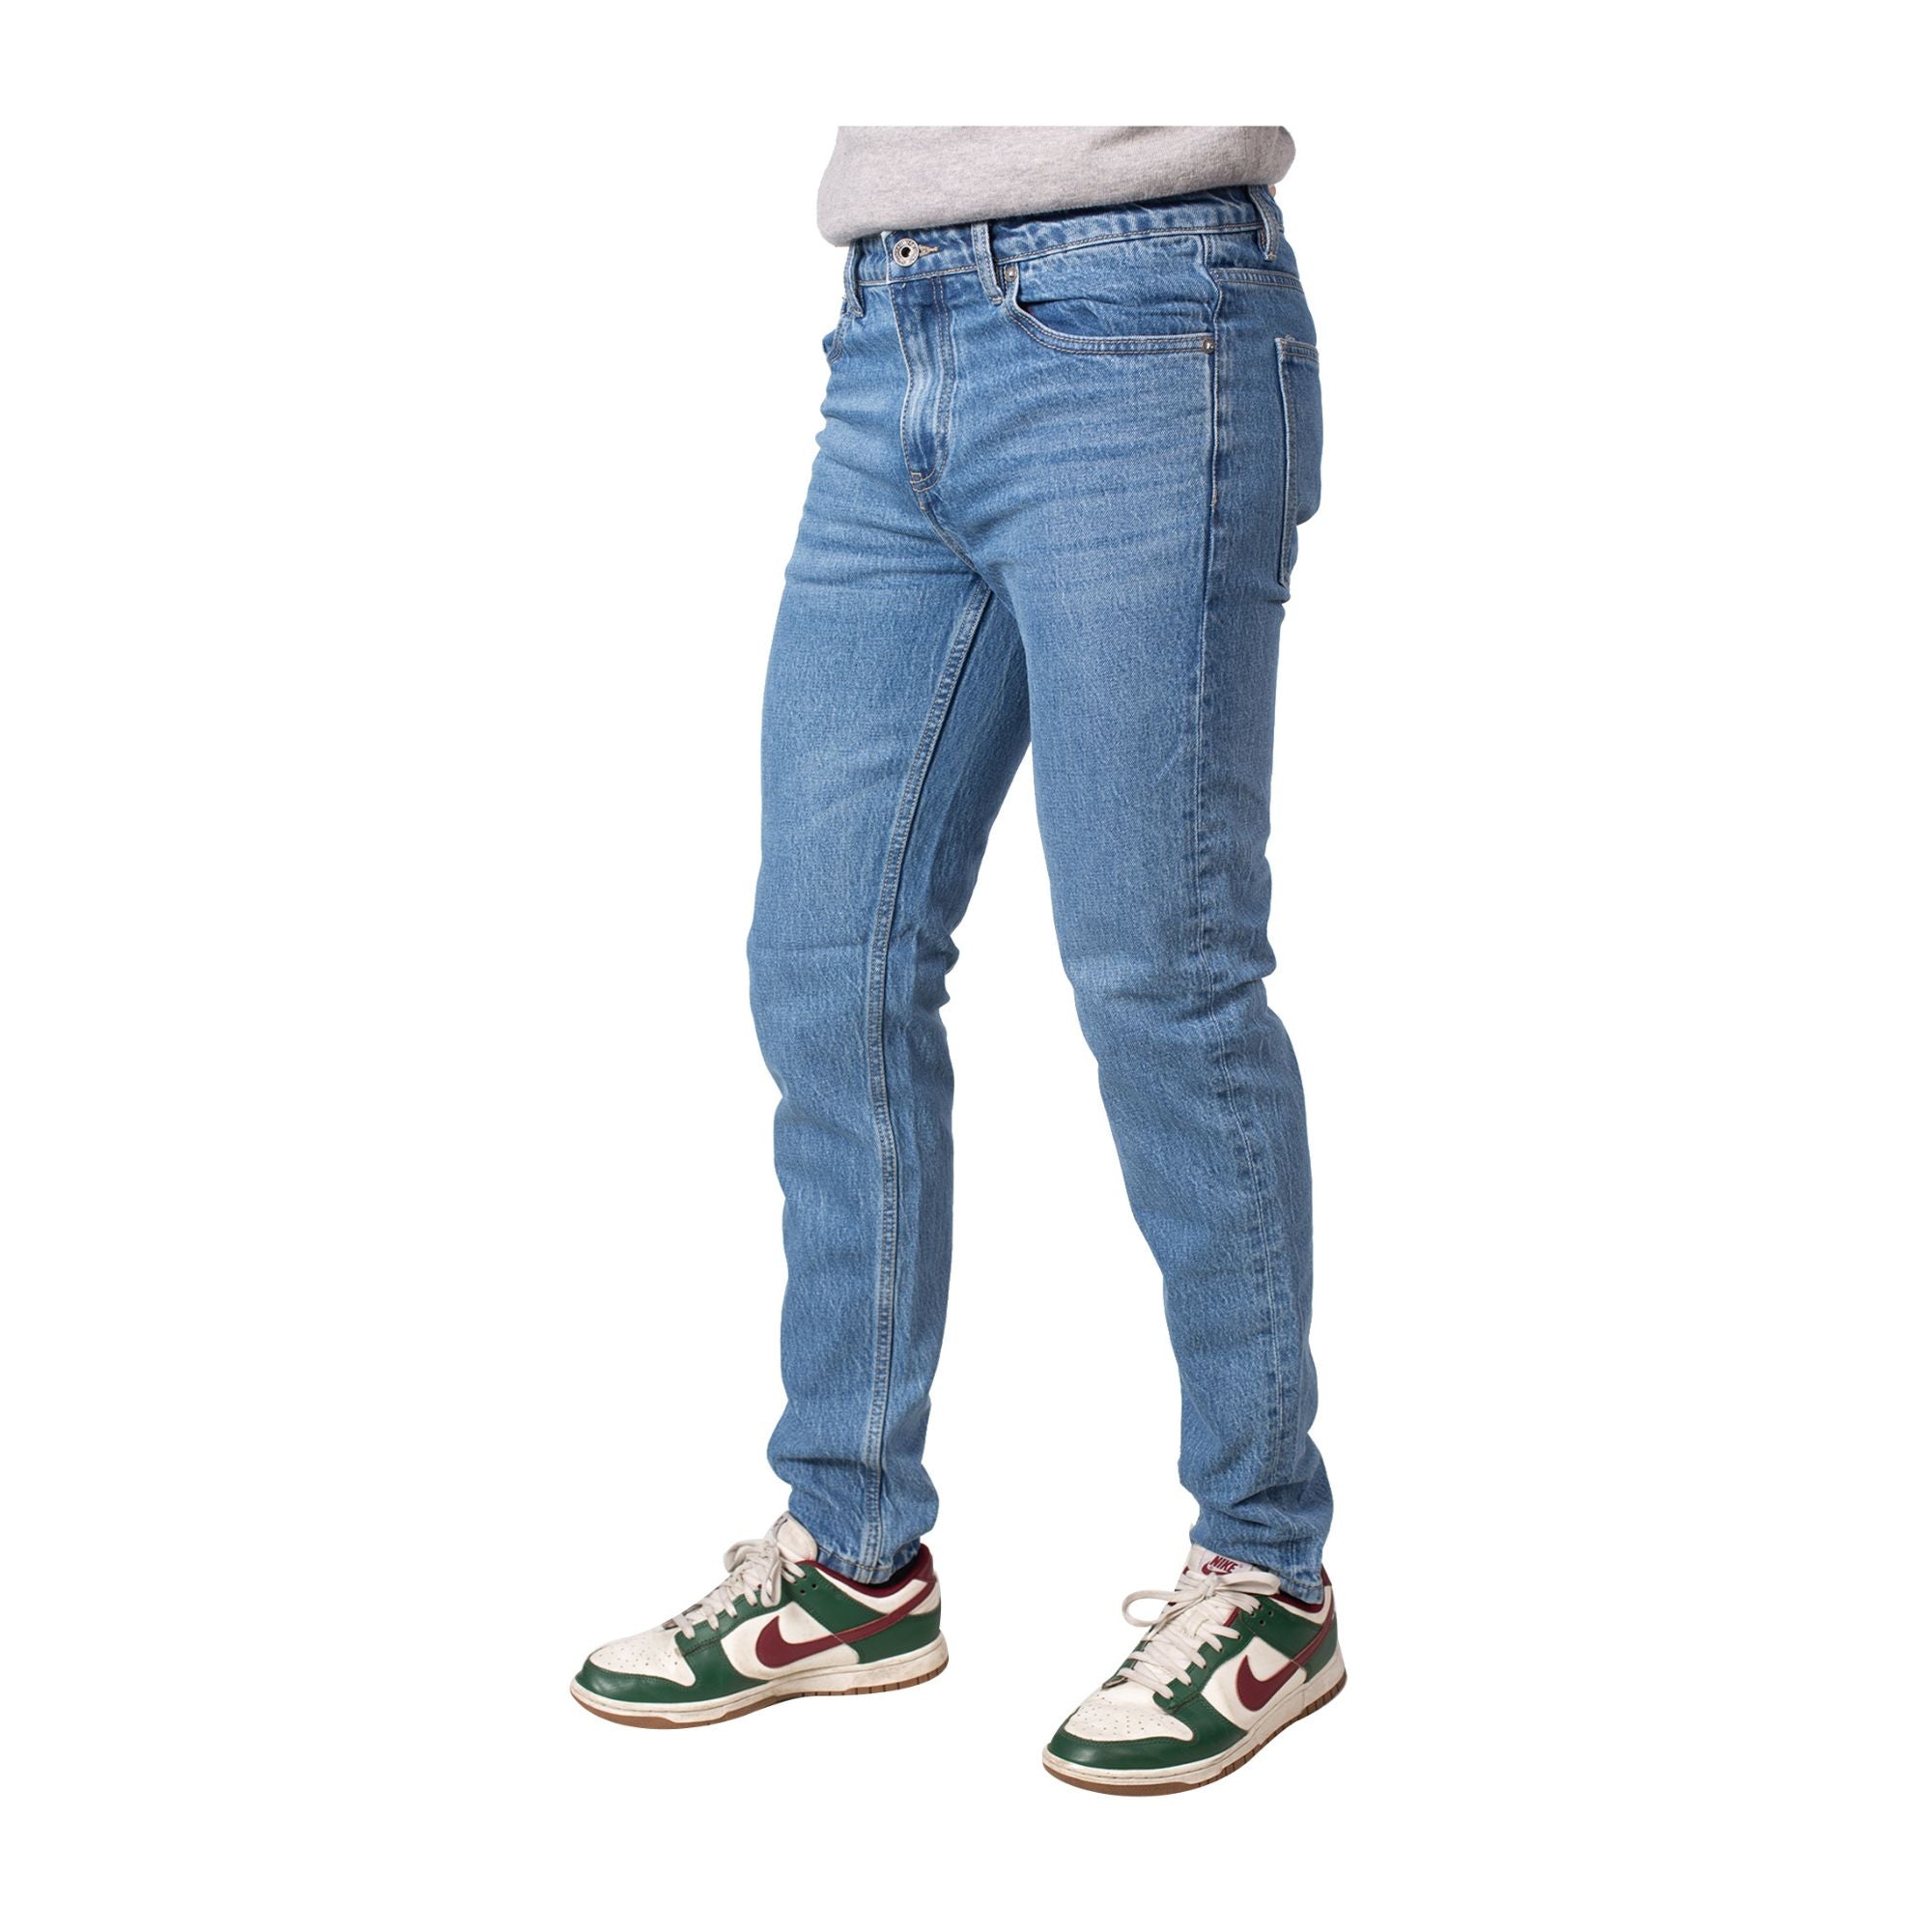 Jeans Uomo in cotone stretch con cinque tasche